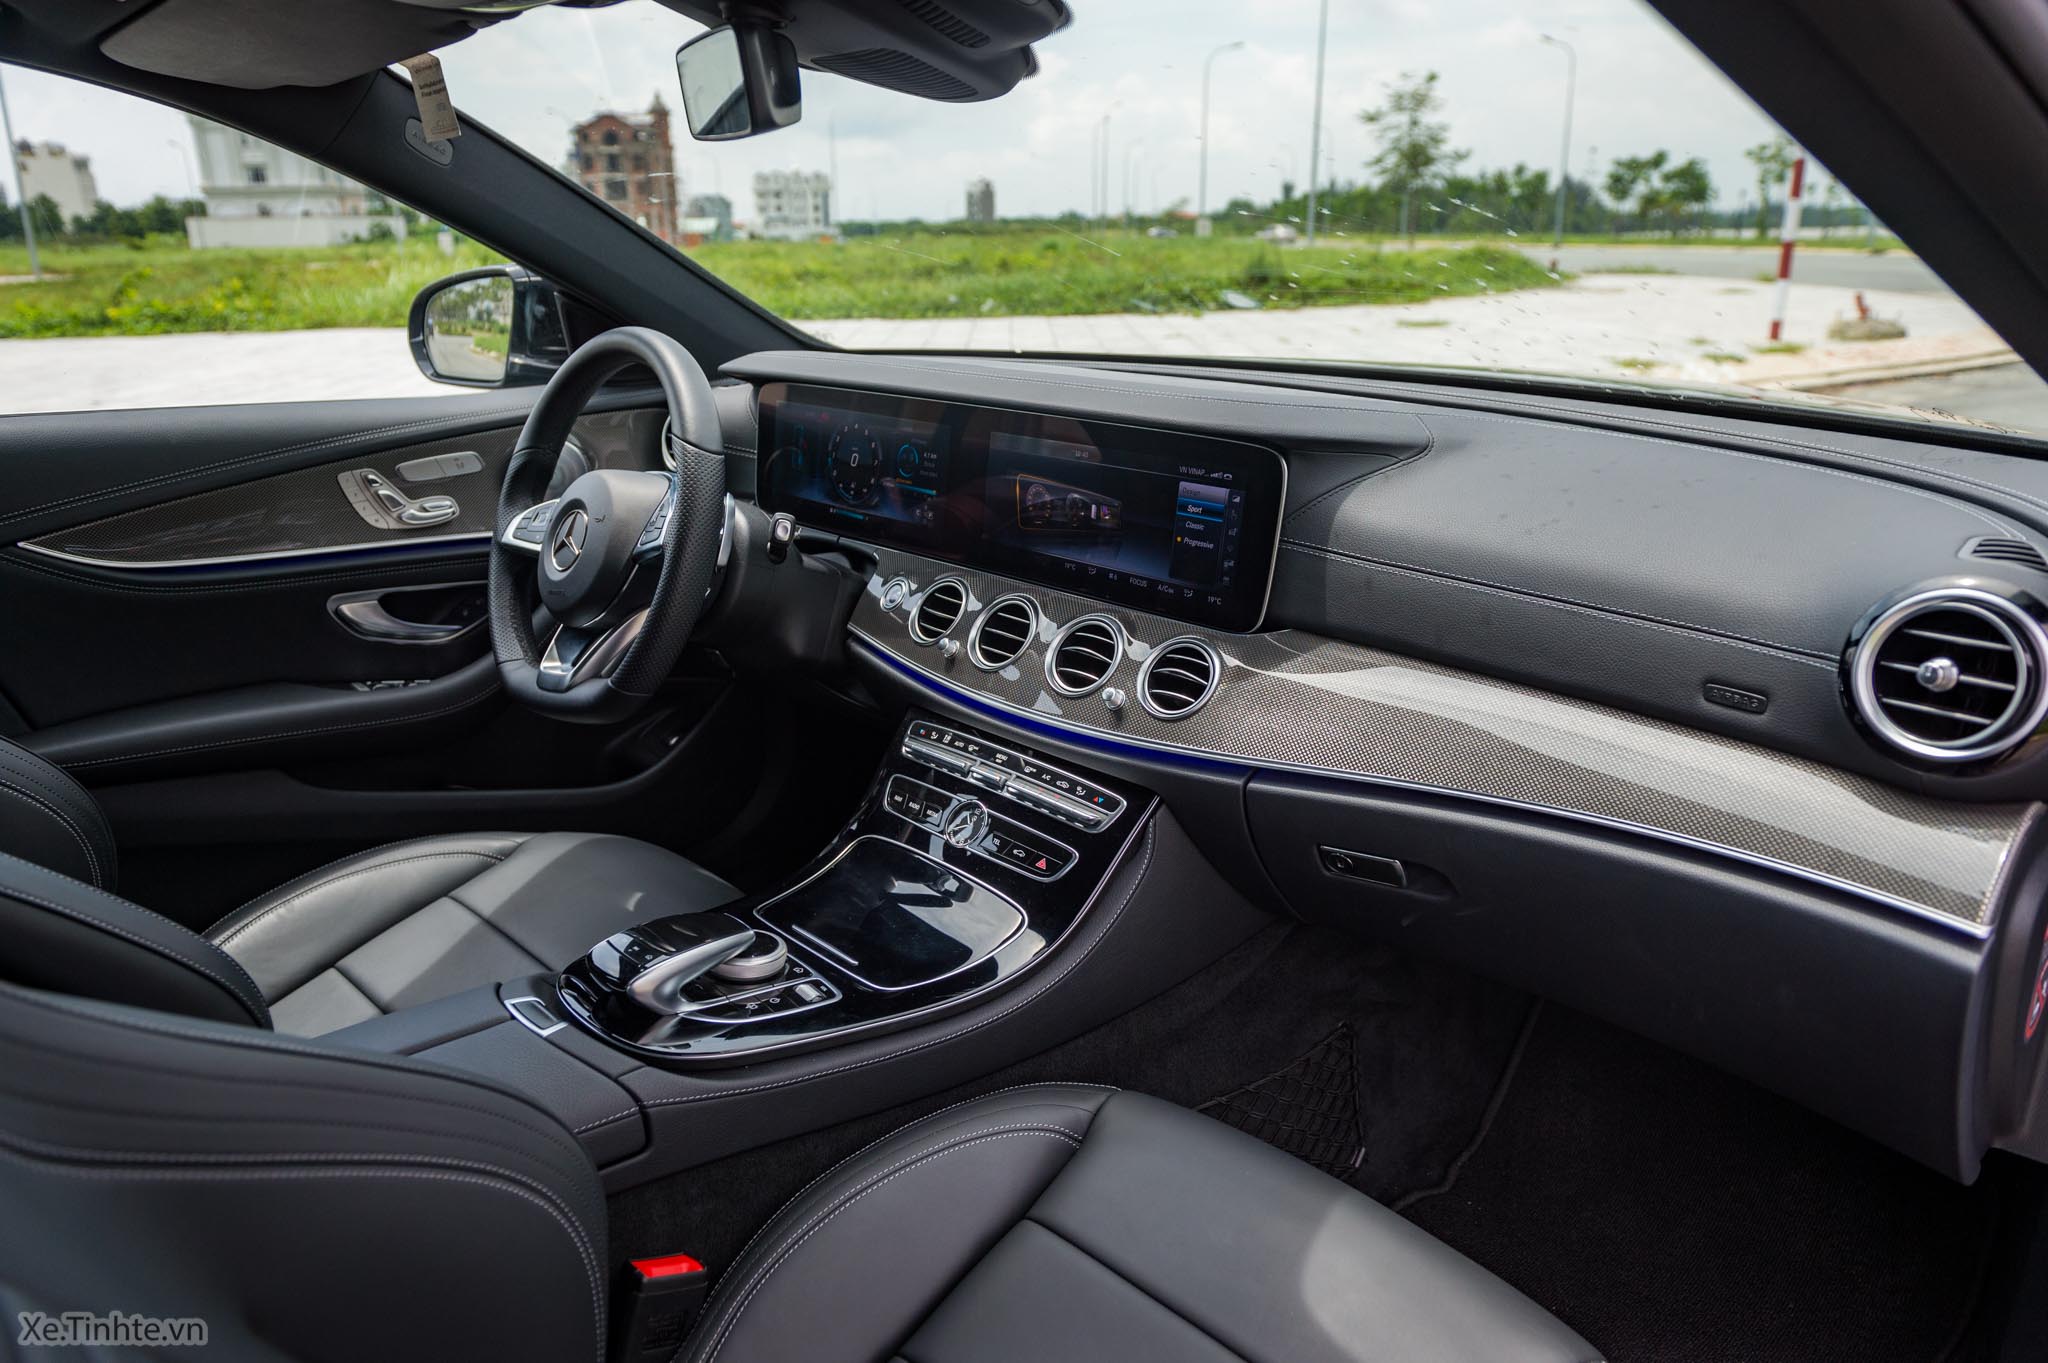 MercedesBenz E300 AMG 2017 sử dụng 1 năm lỗ hơn nửa tỷ đồng